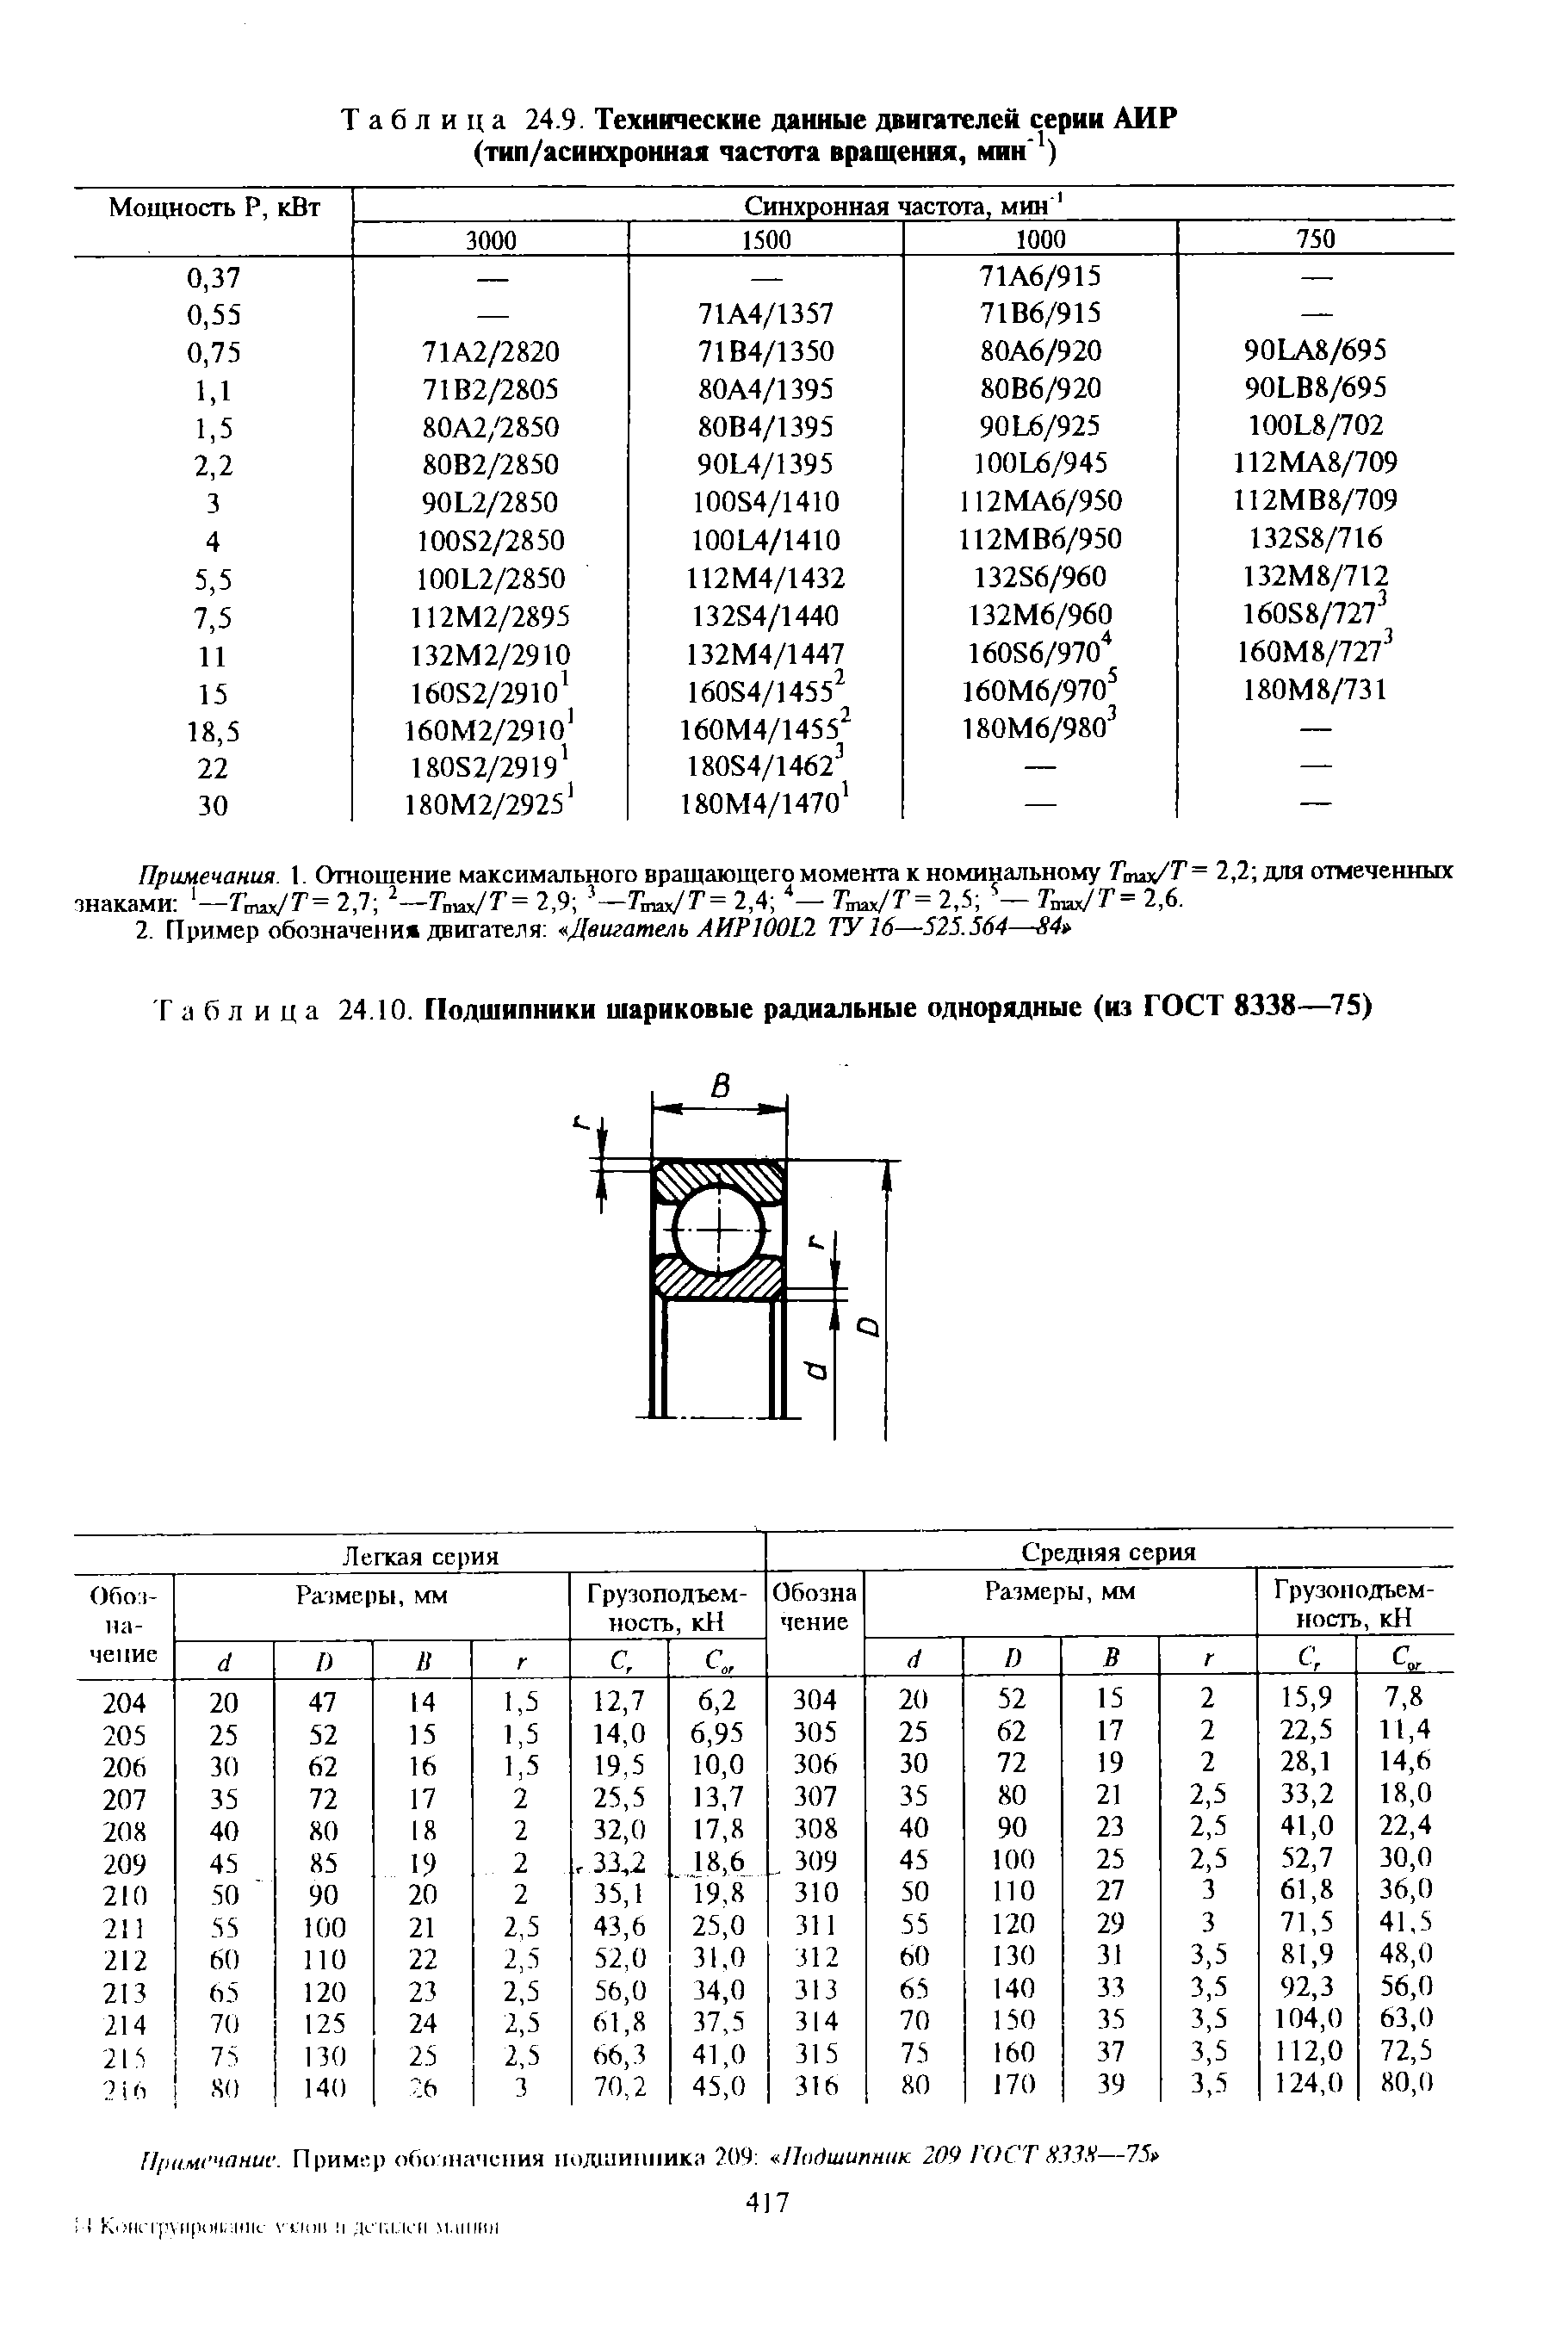 Таблица 24.10. <a href="/info/118955">Подшипники шариковые радиальные однорядные</a> (из ГОСТ 8338—75)
